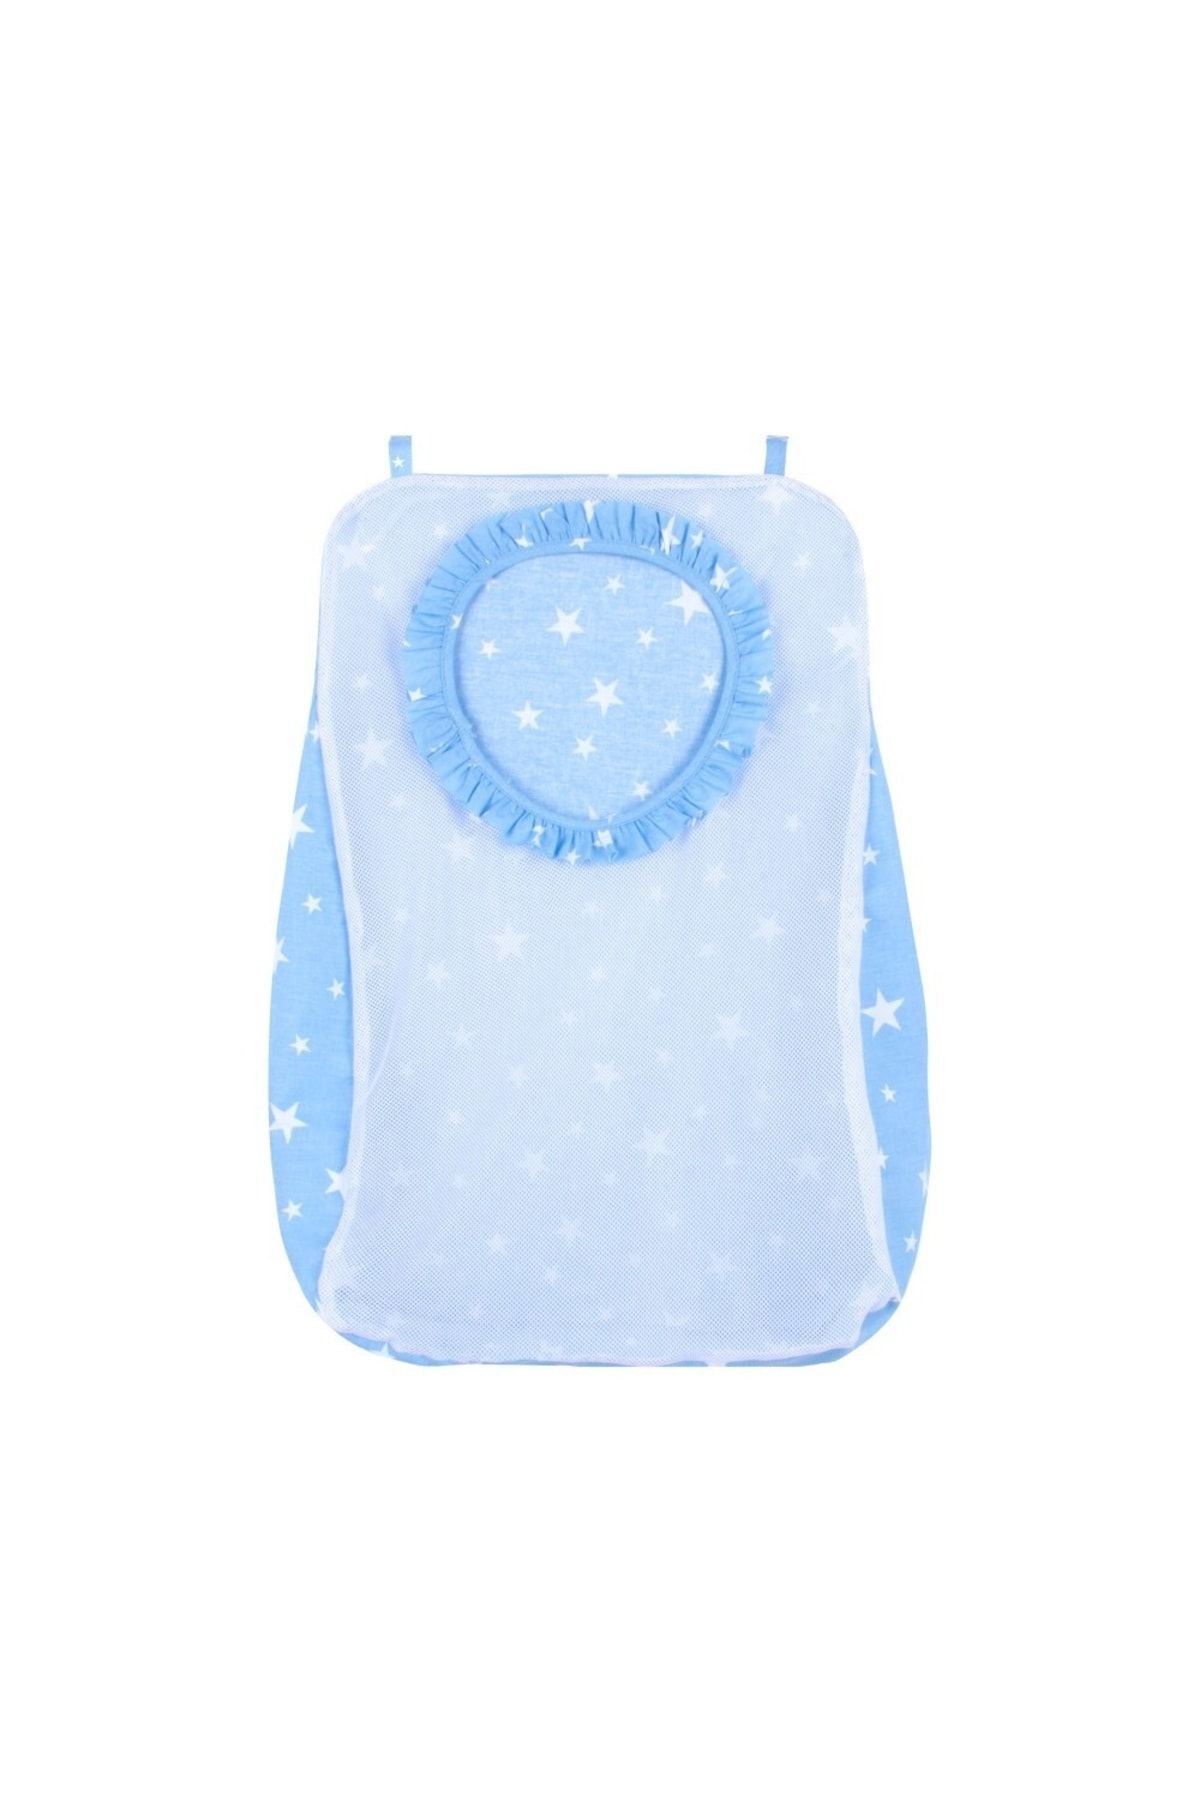 Genel Markalar Kirli Çamaşır Torbası ART-83 Mavi Yıldız